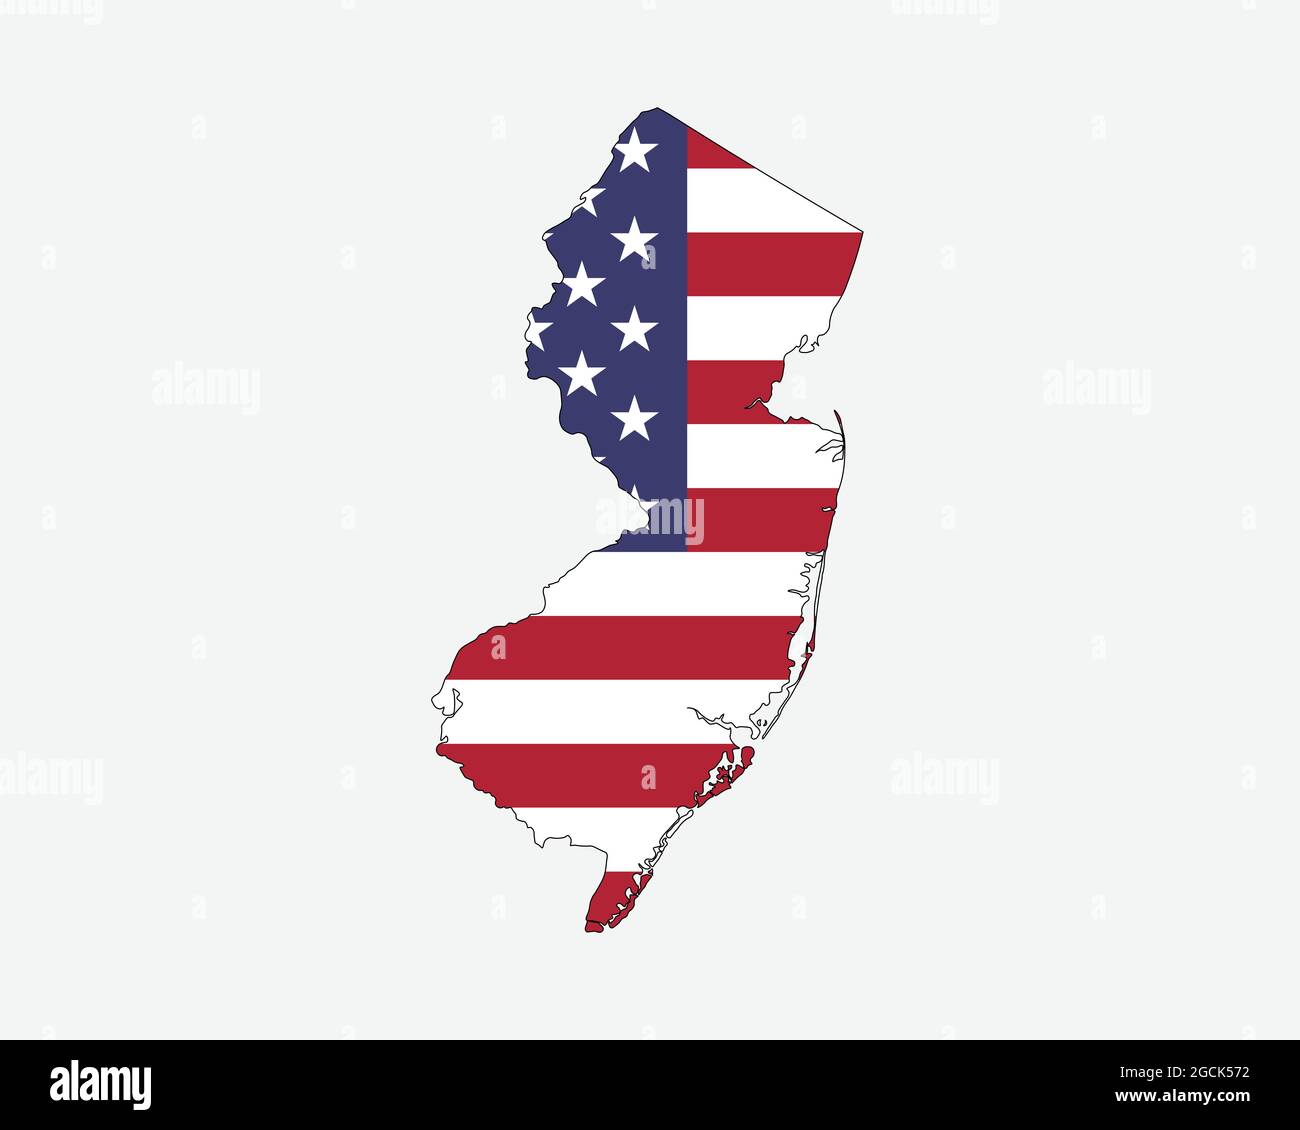 Mappa del New Jersey sulla bandiera americana. NJ, USA mappa di stato sulla bandiera degli Stati Uniti. Icona Clipart grafica vettoriale EPS Illustrazione Vettoriale